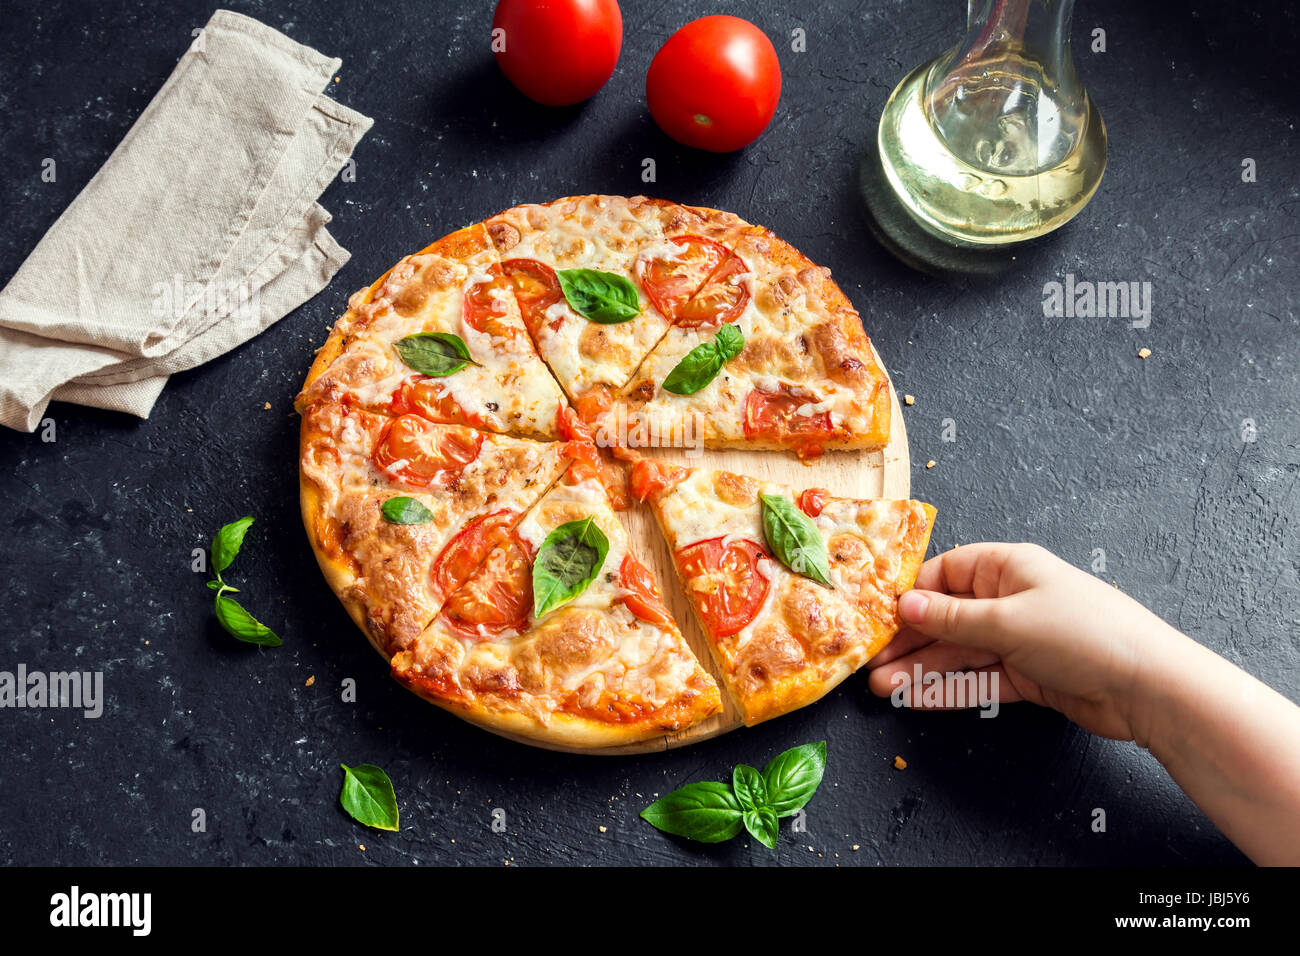 Menschen Hand die Scheibe der Pizza Margherita. Pizza Margarita und Kinderhand hautnah. Stockfoto